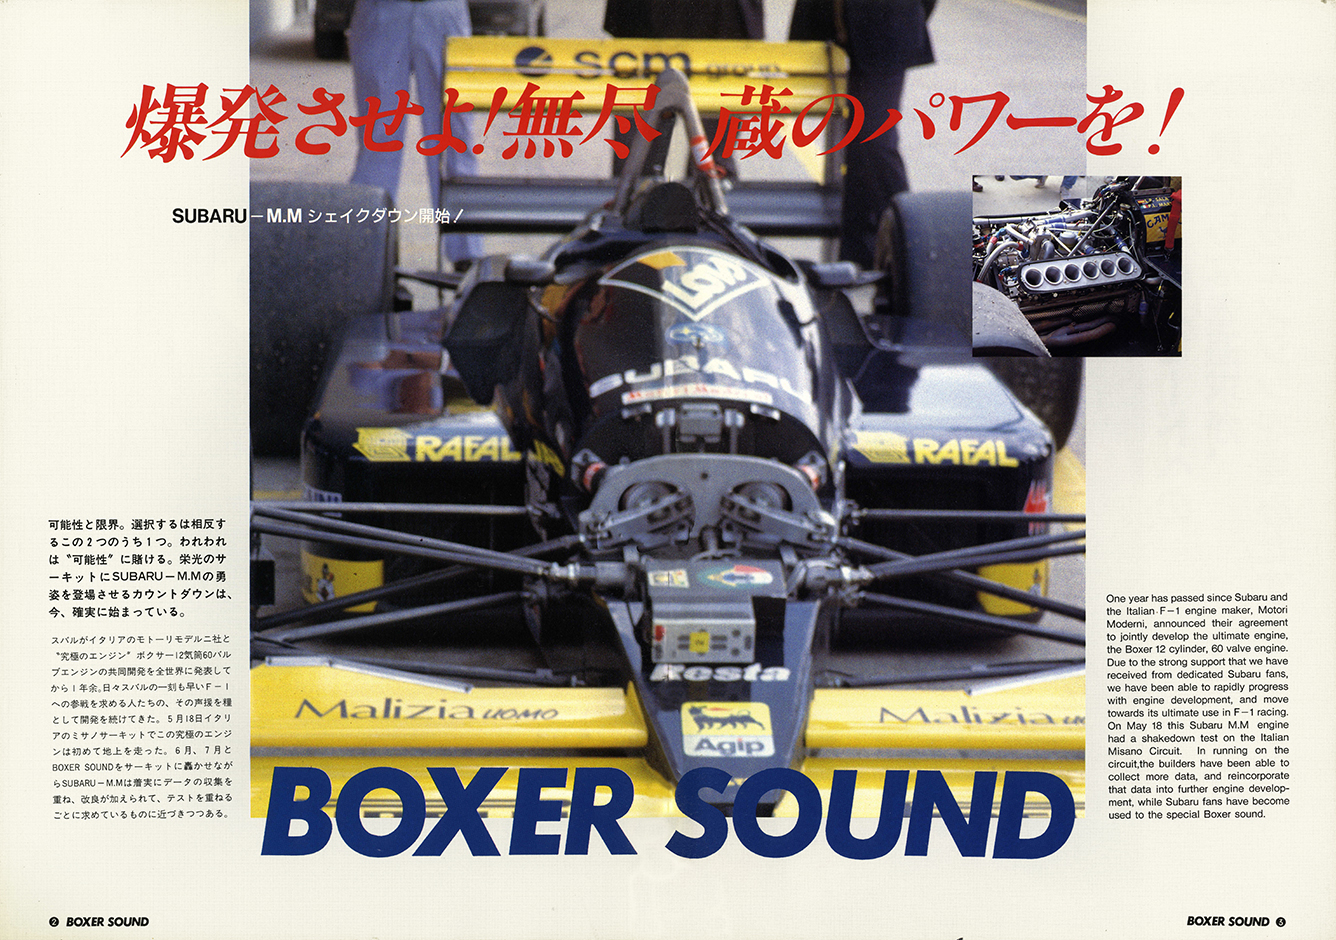 2000N8s 1989N7s BOXER SOUND vol.02(3)